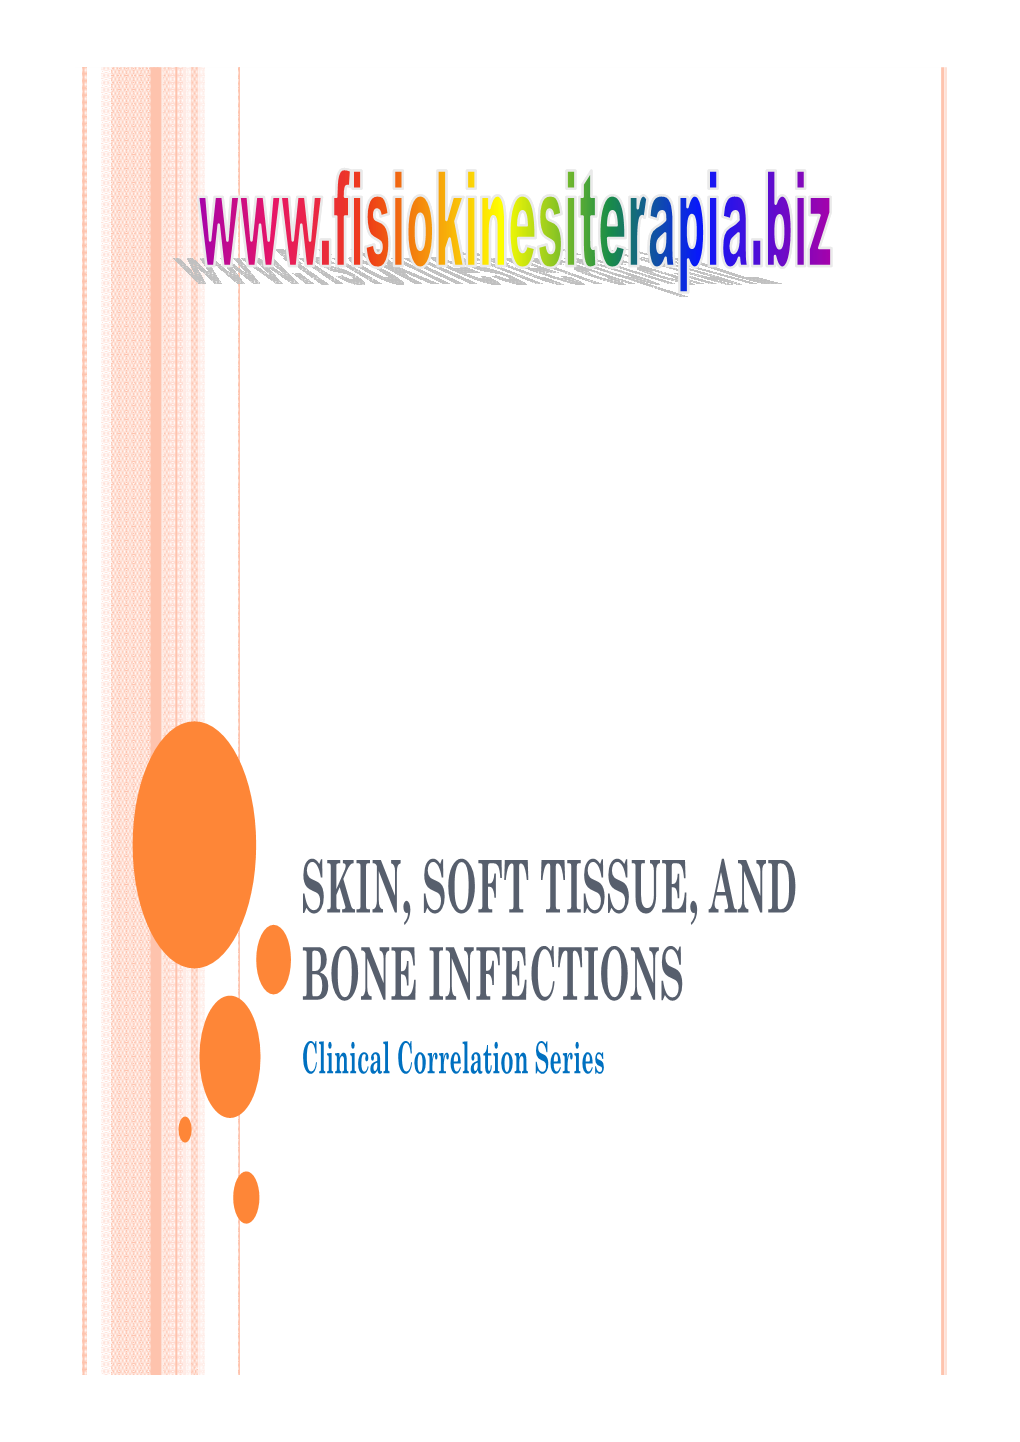 SKIN, SOFT TISSUE, and BONE INFECTIONS Clinical Correlation Series Impetigo